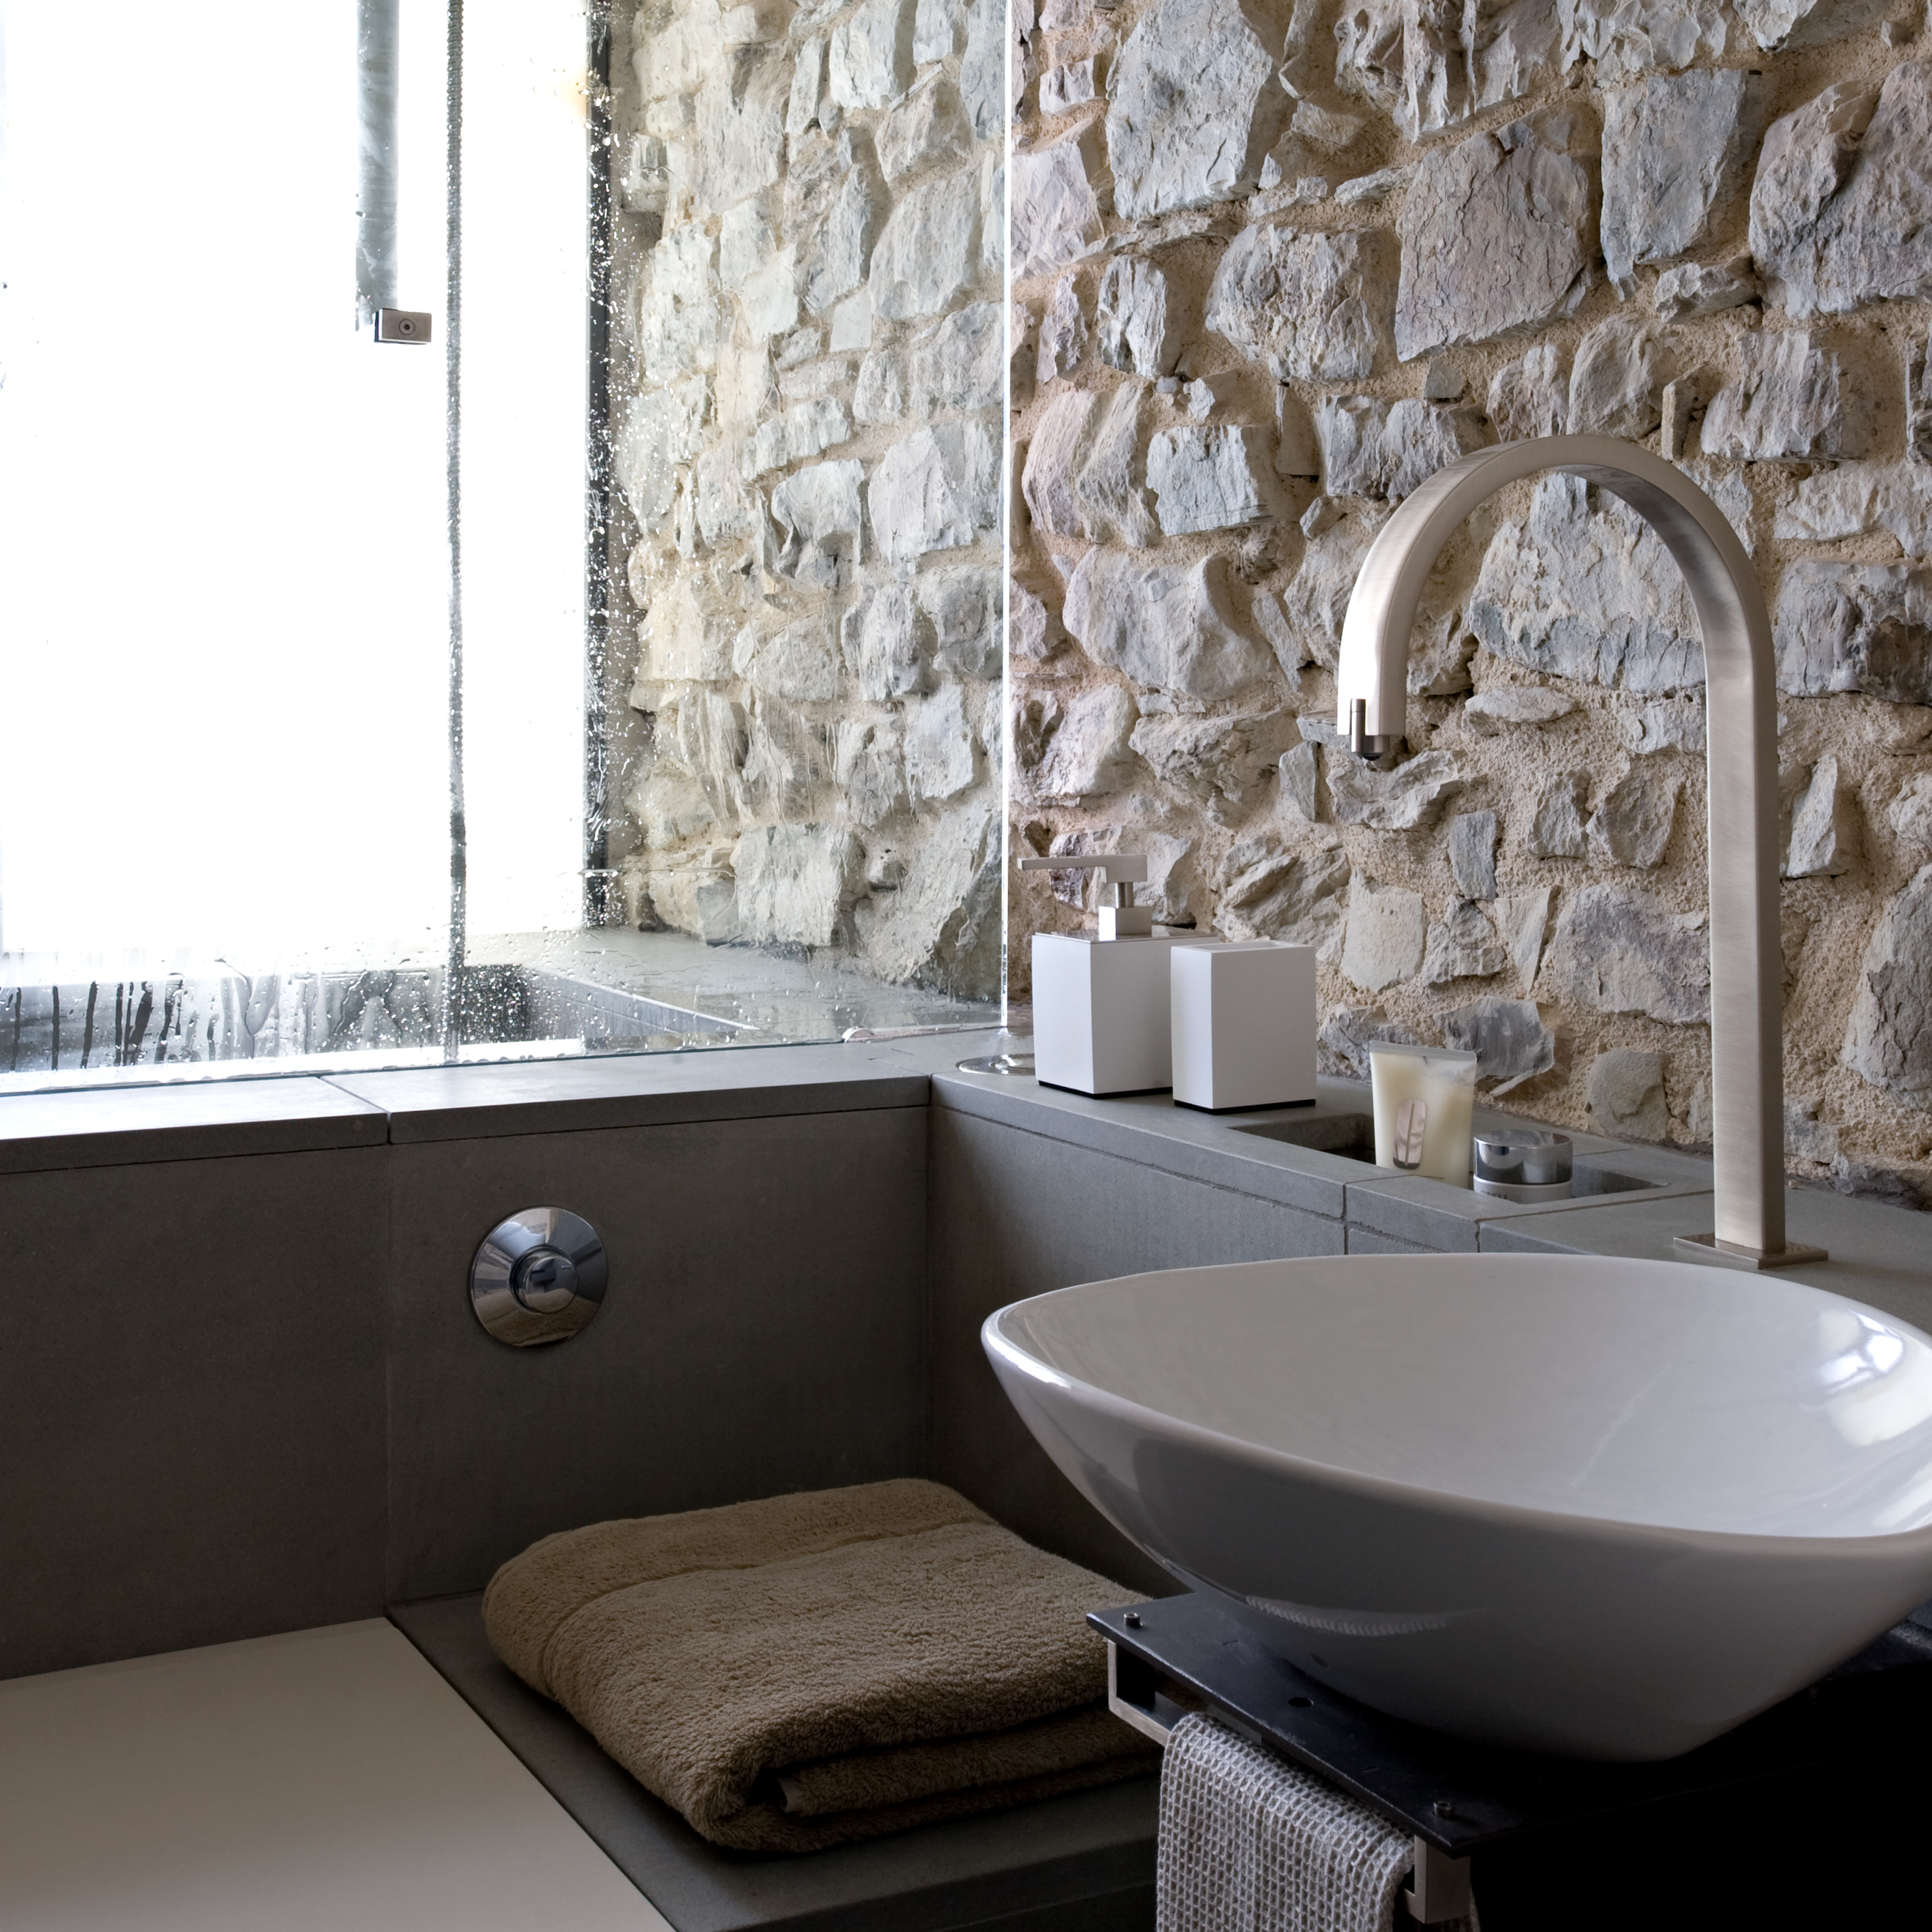 Torre di Moravola features in Dezeen's Pinterest bathroom roundup